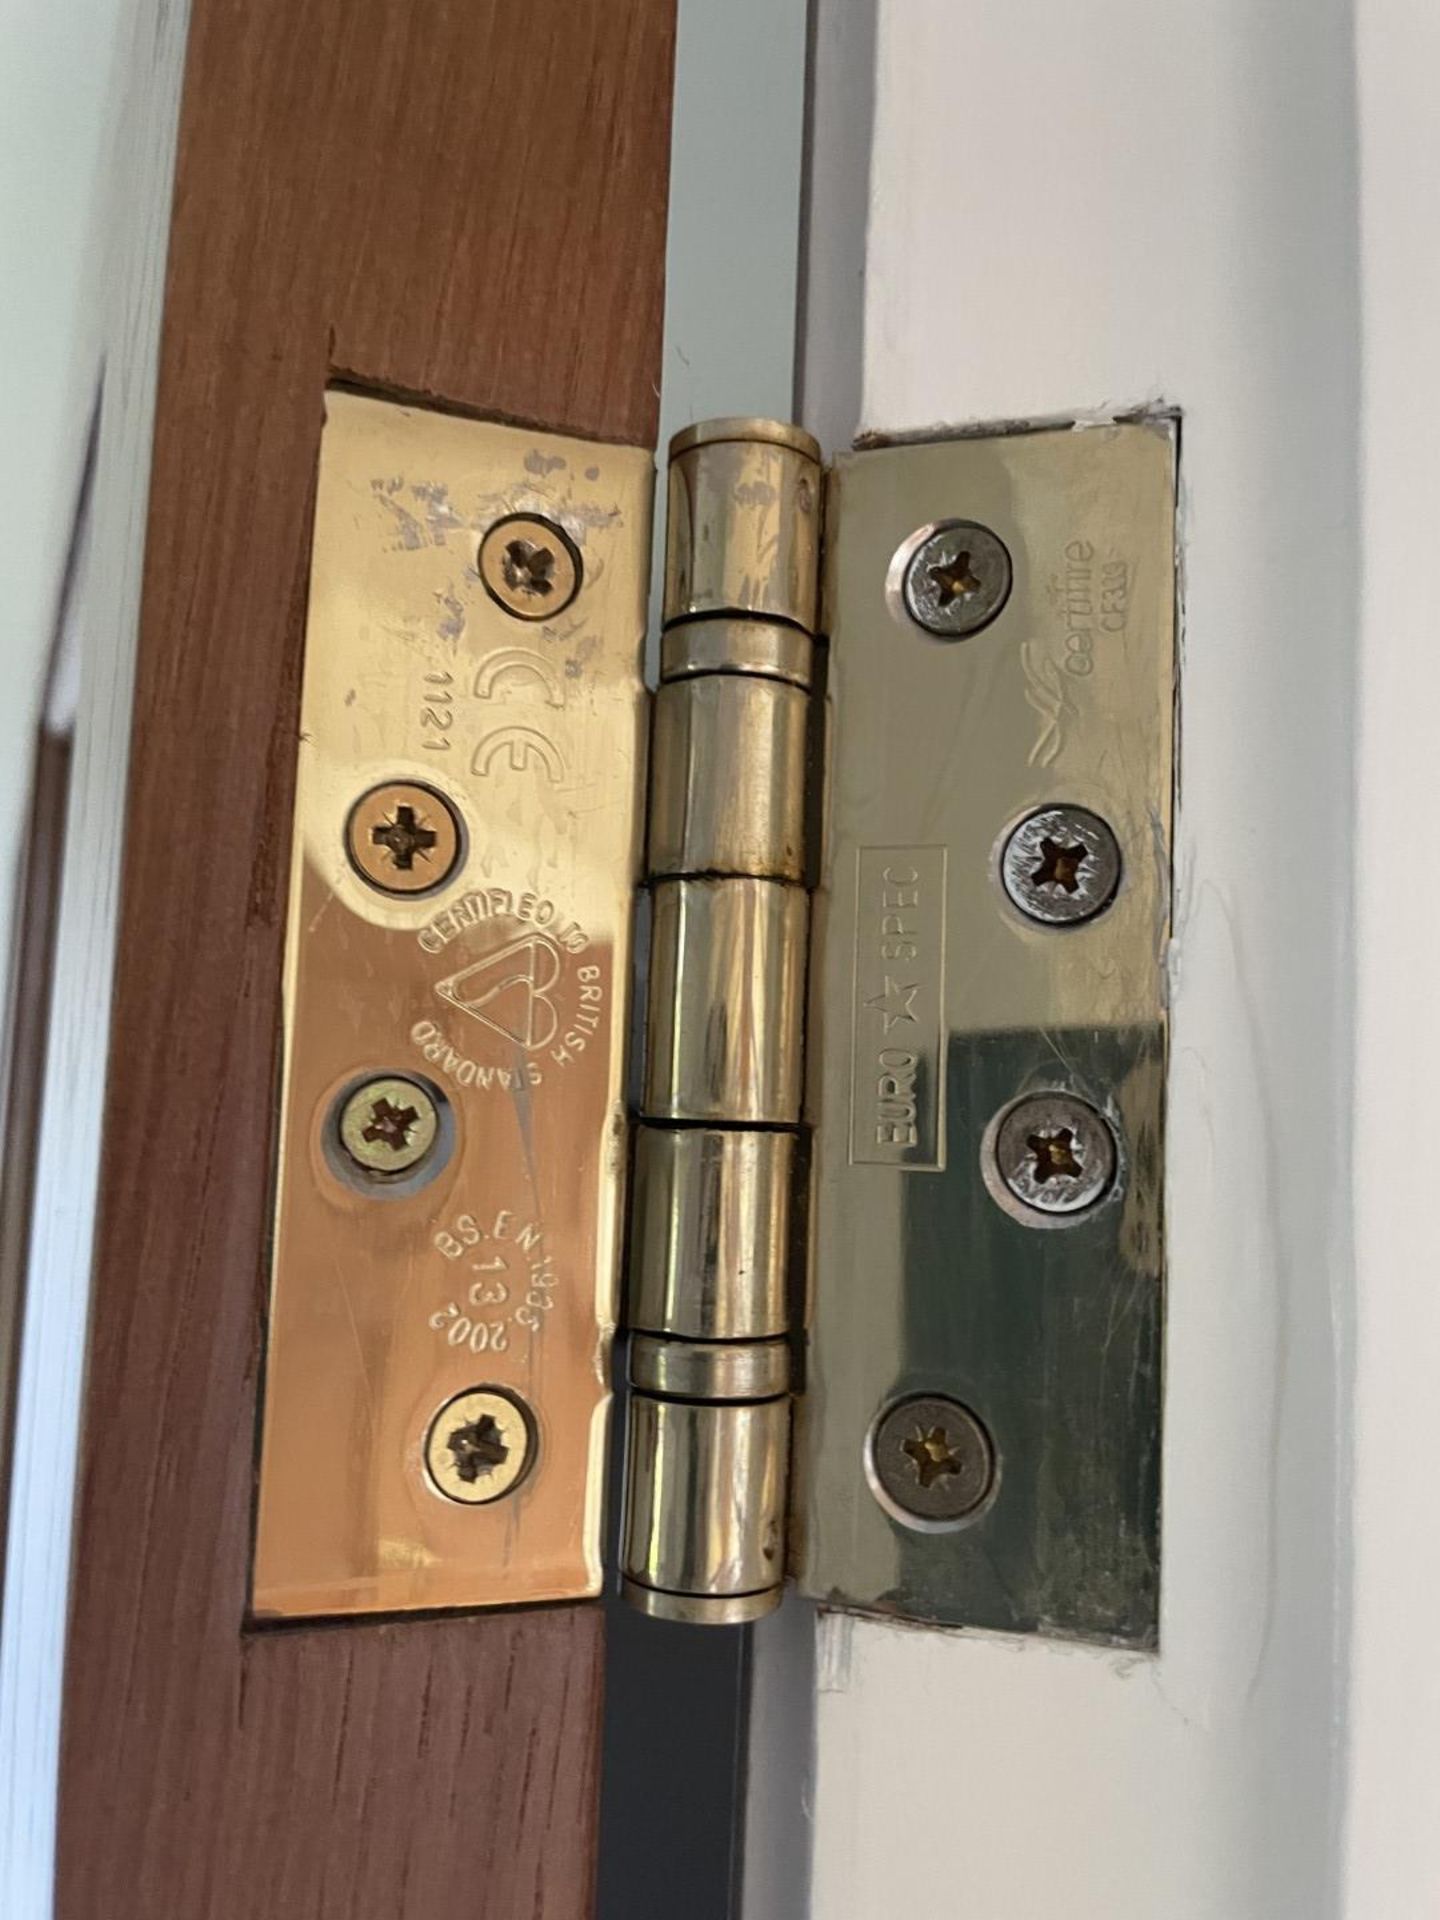 1 x Solid Oak Wooden Lockable Internal Door - Ref: PAN201 / INHLWY - CL896 - NO VAT - Image 7 of 10